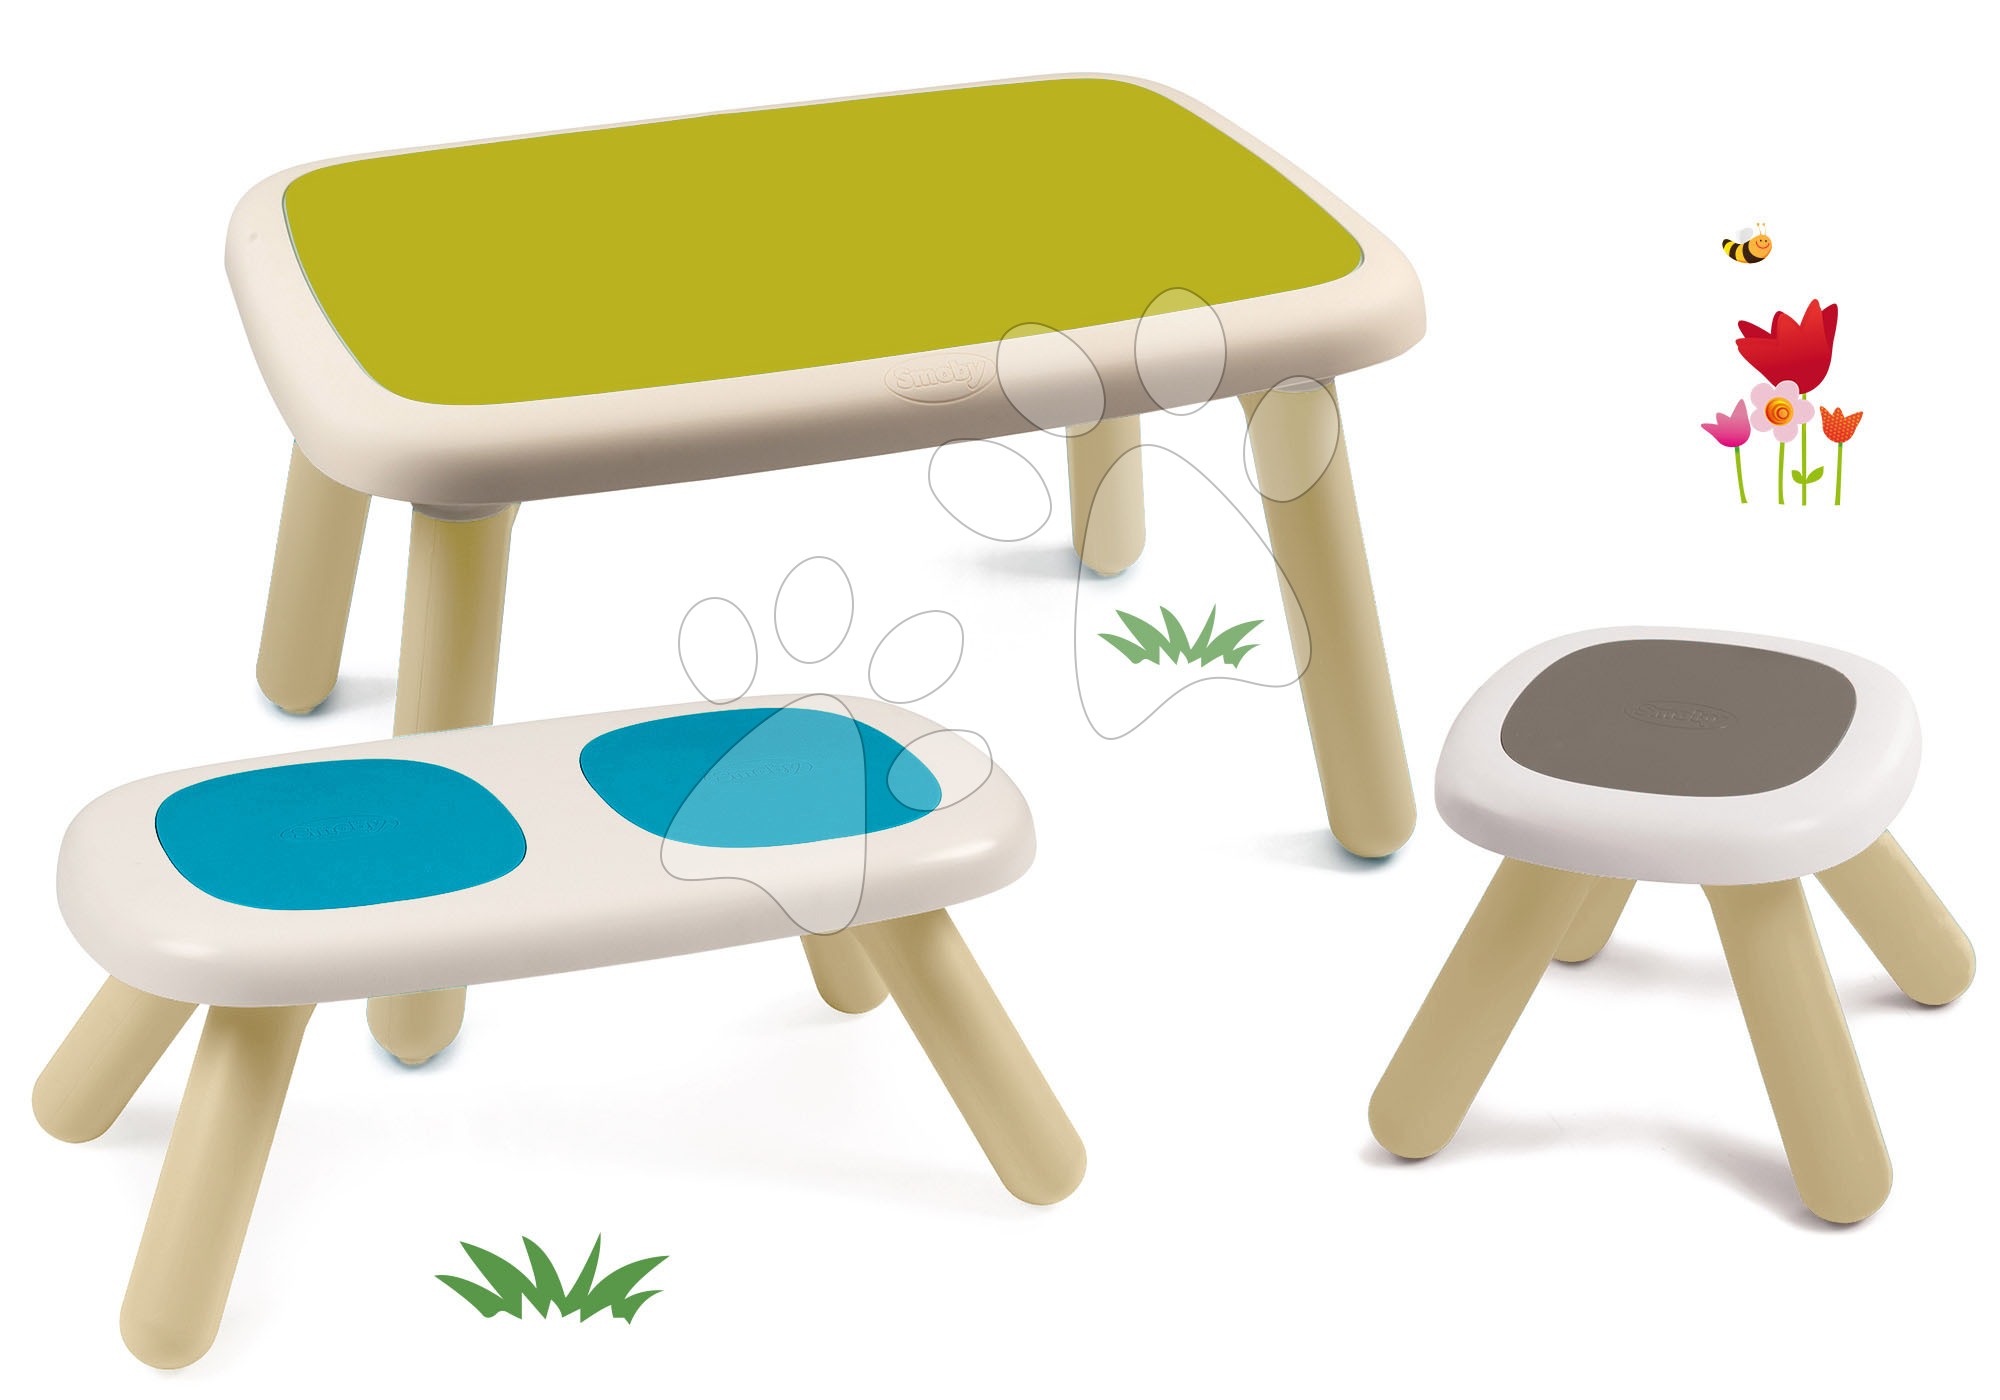 Dětský záhradní nábytek sety - Set stůl pro děti KidTable zelený Smoby s lavicí a stolečkem s UV filtrem